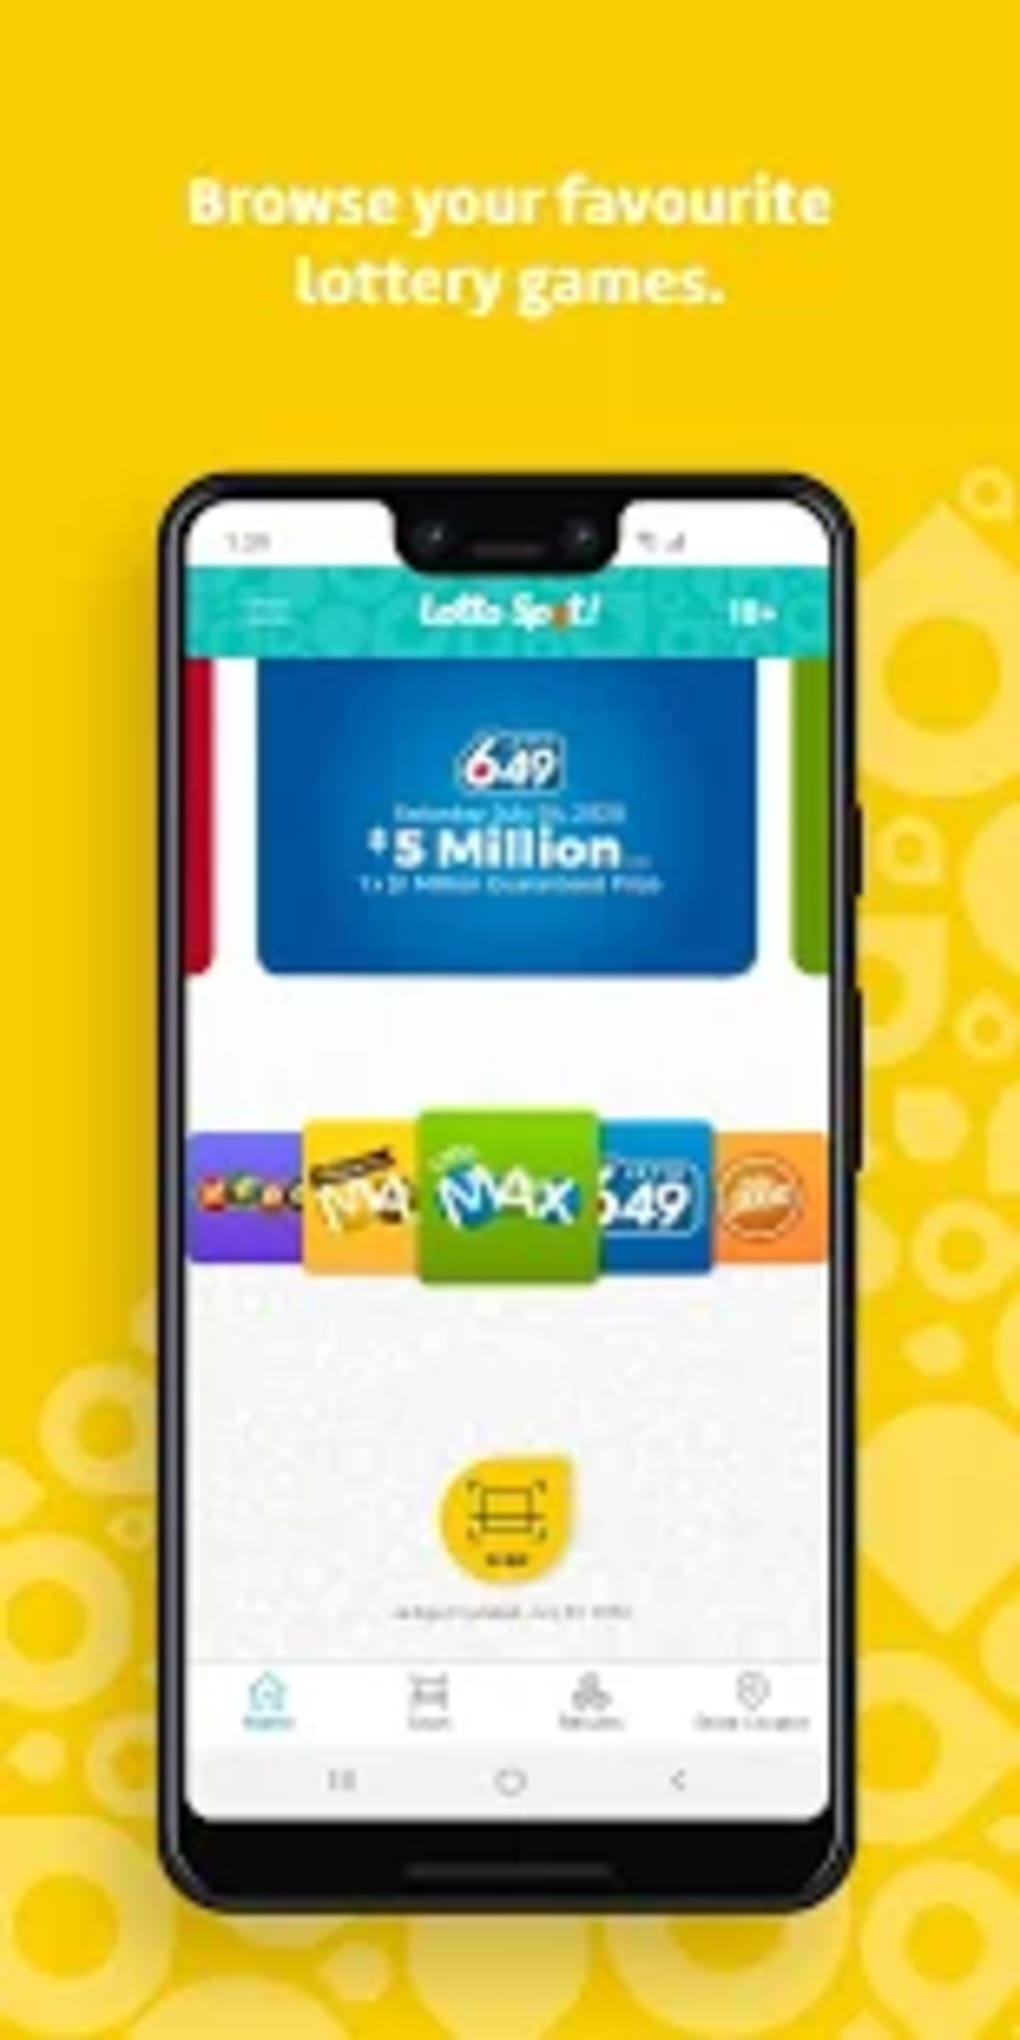 lotto 649 mobile app